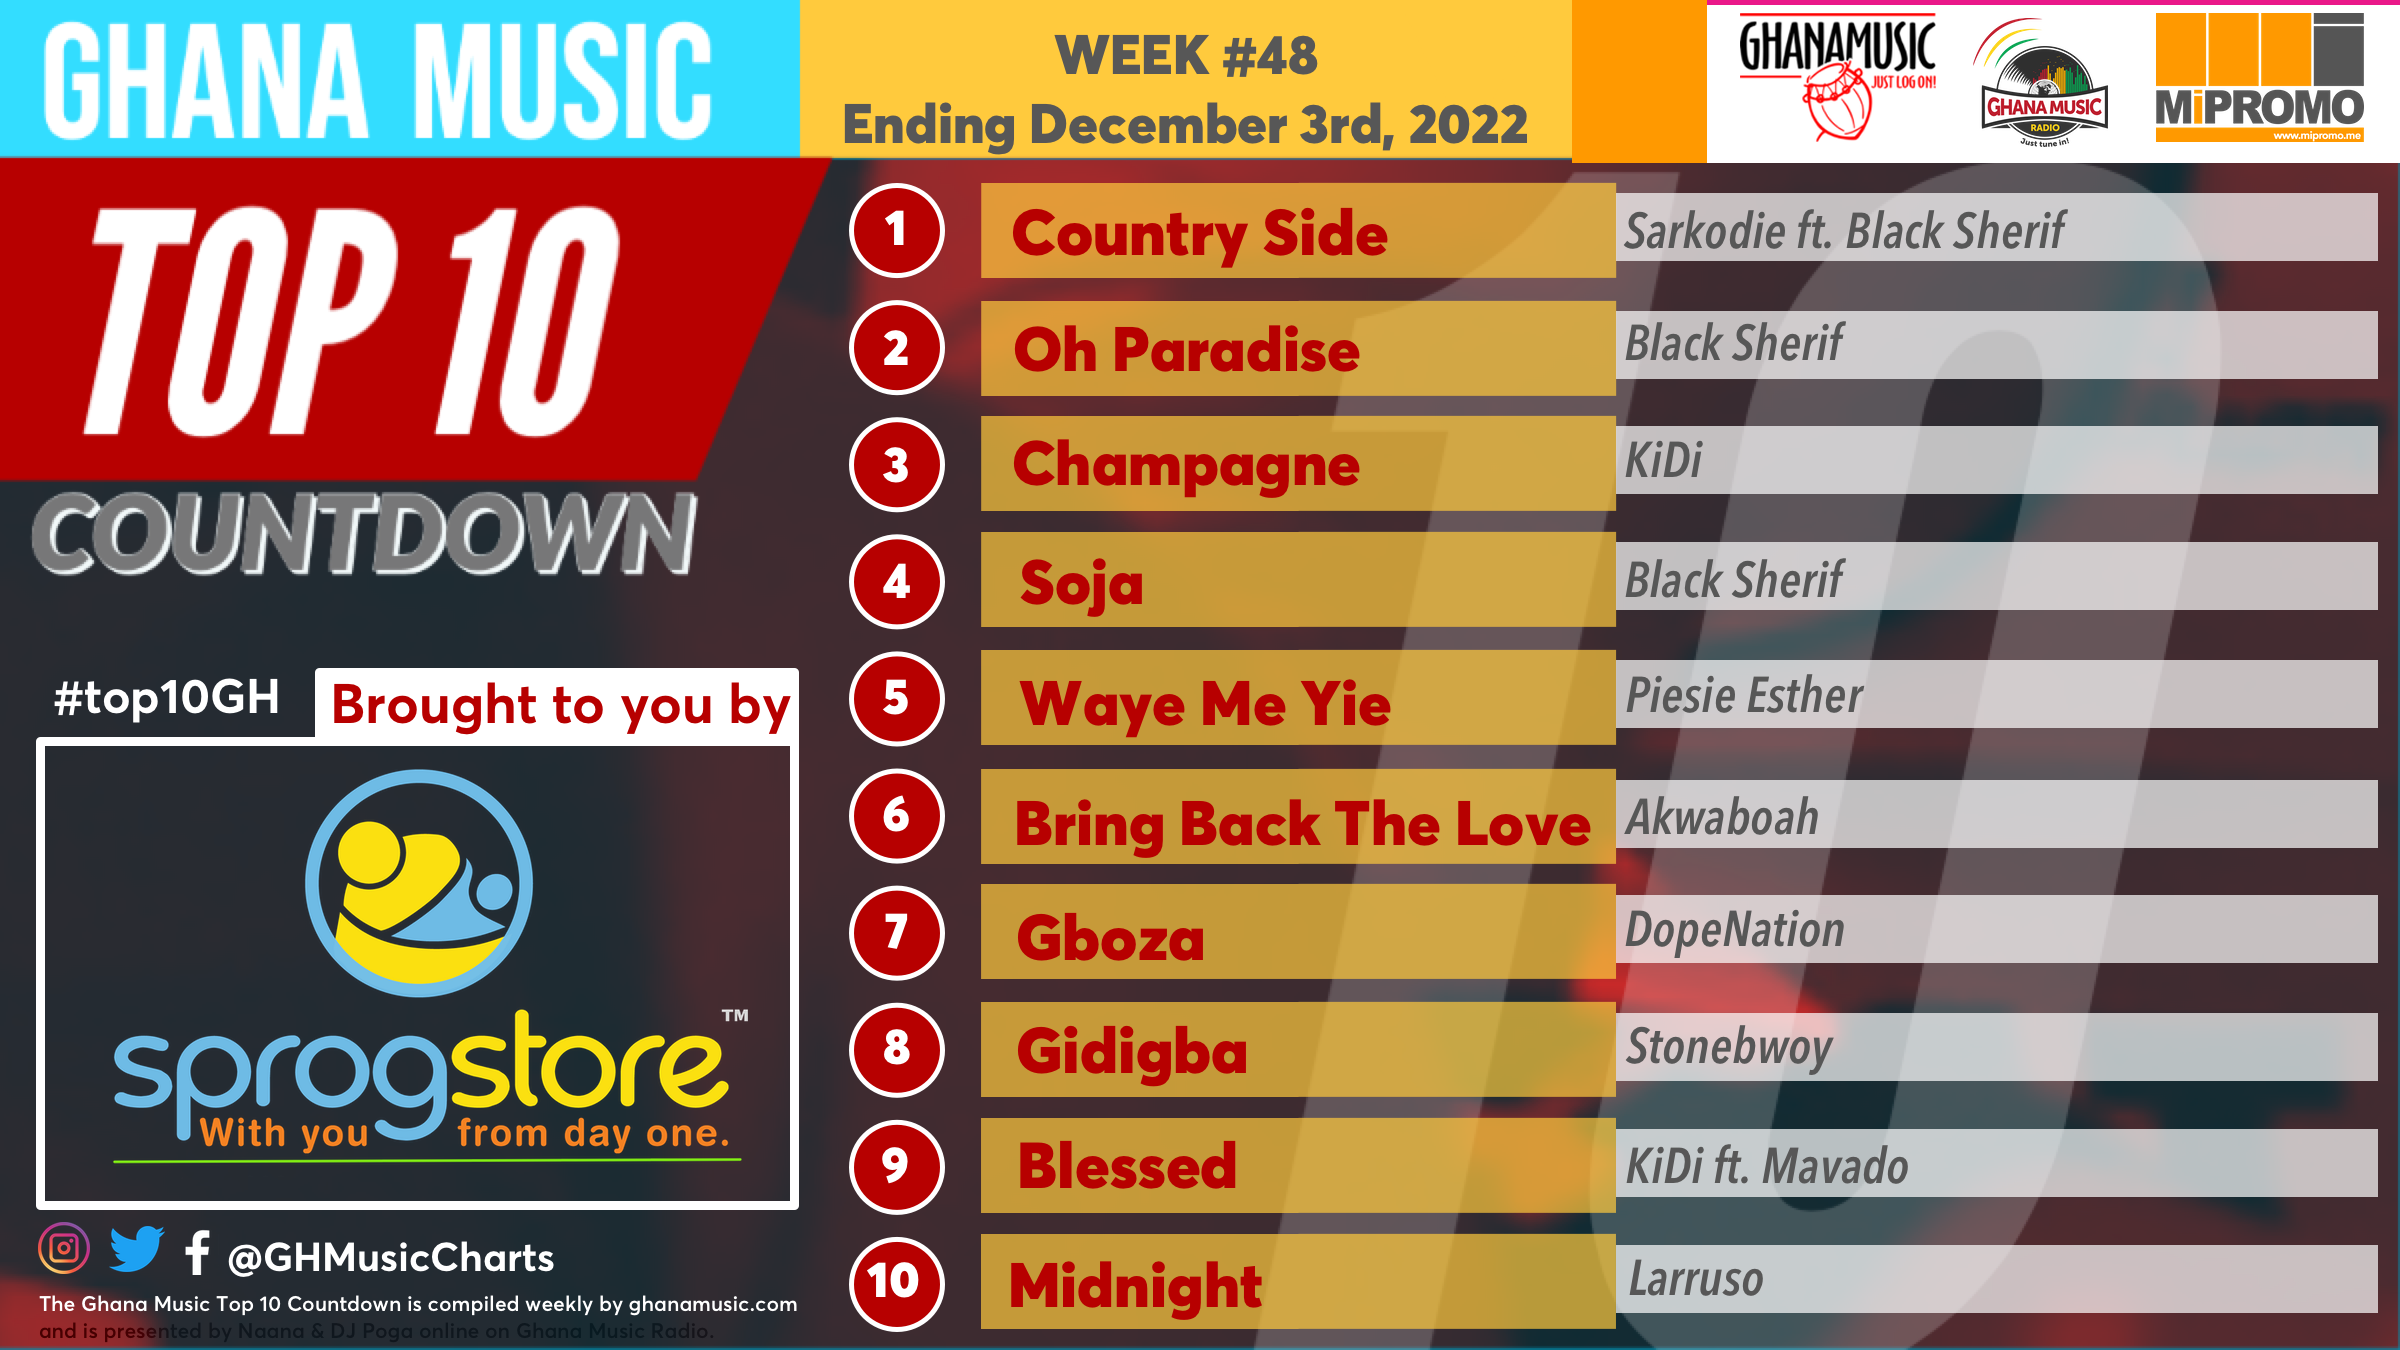 2022 Week 48: Ghana Music Top 10 Countdown